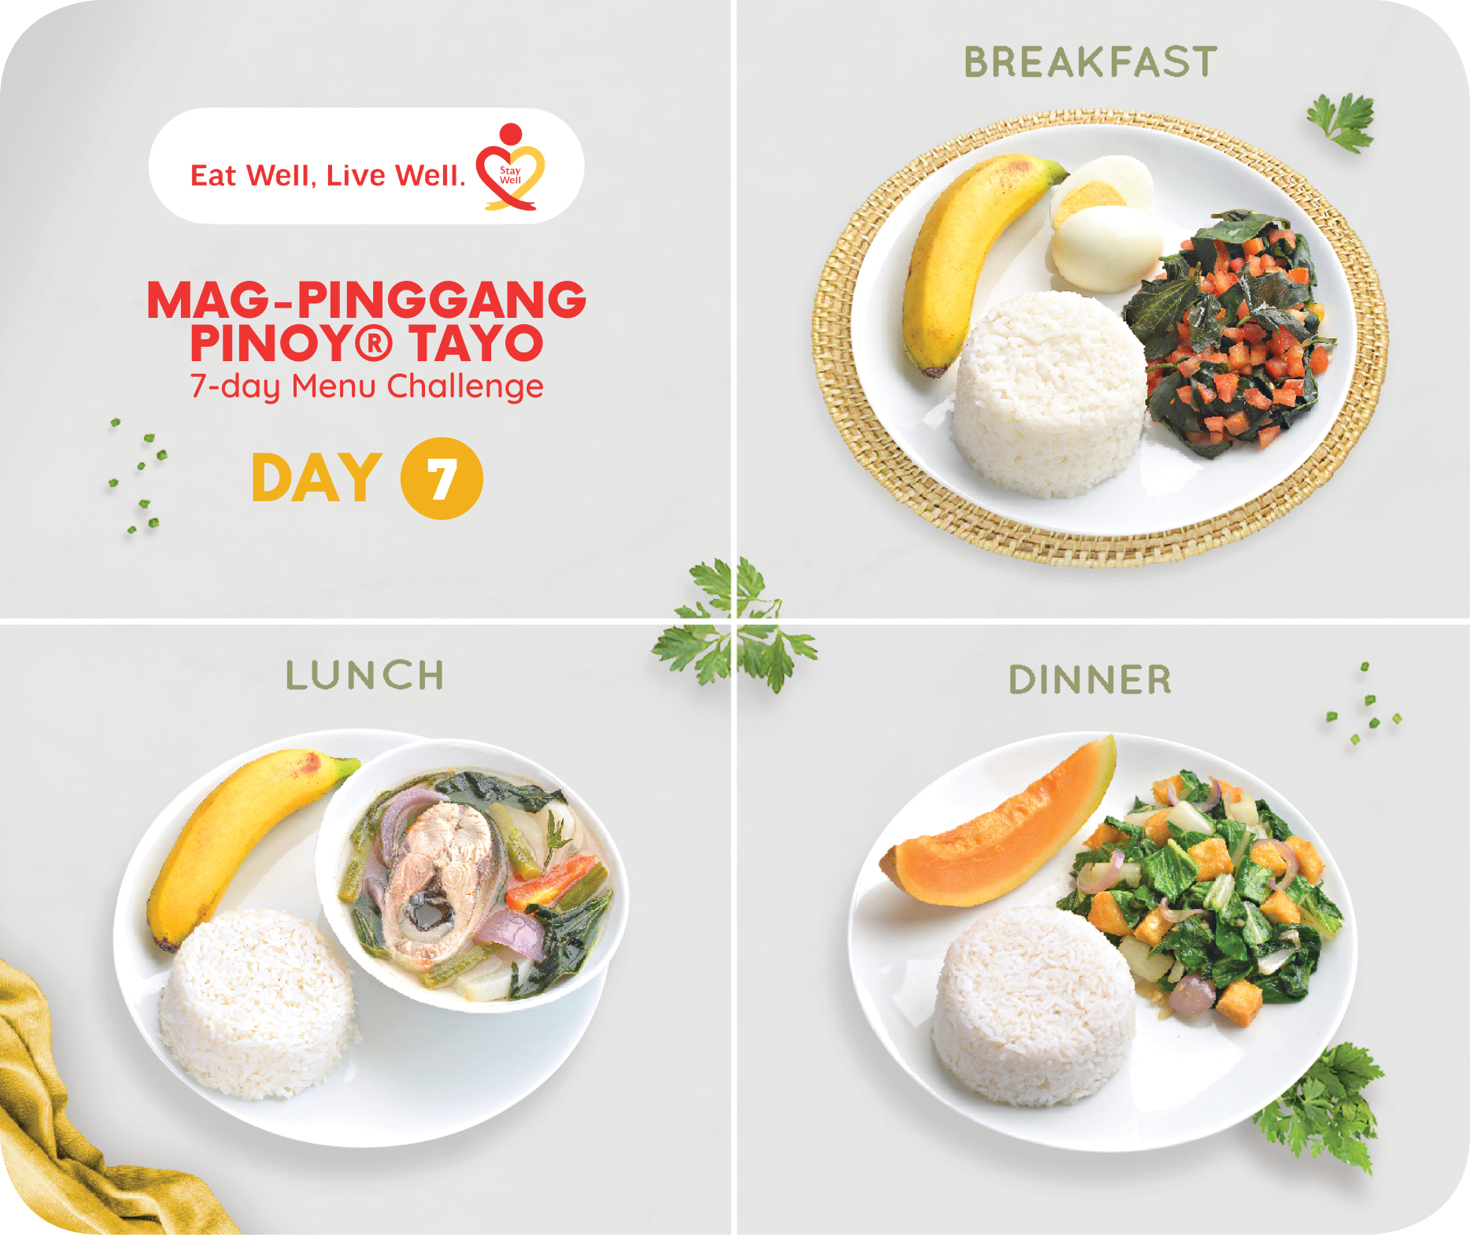 Day 7 of Mag-Pinggang Pinoy® Tayo 7-day Menu Challenge